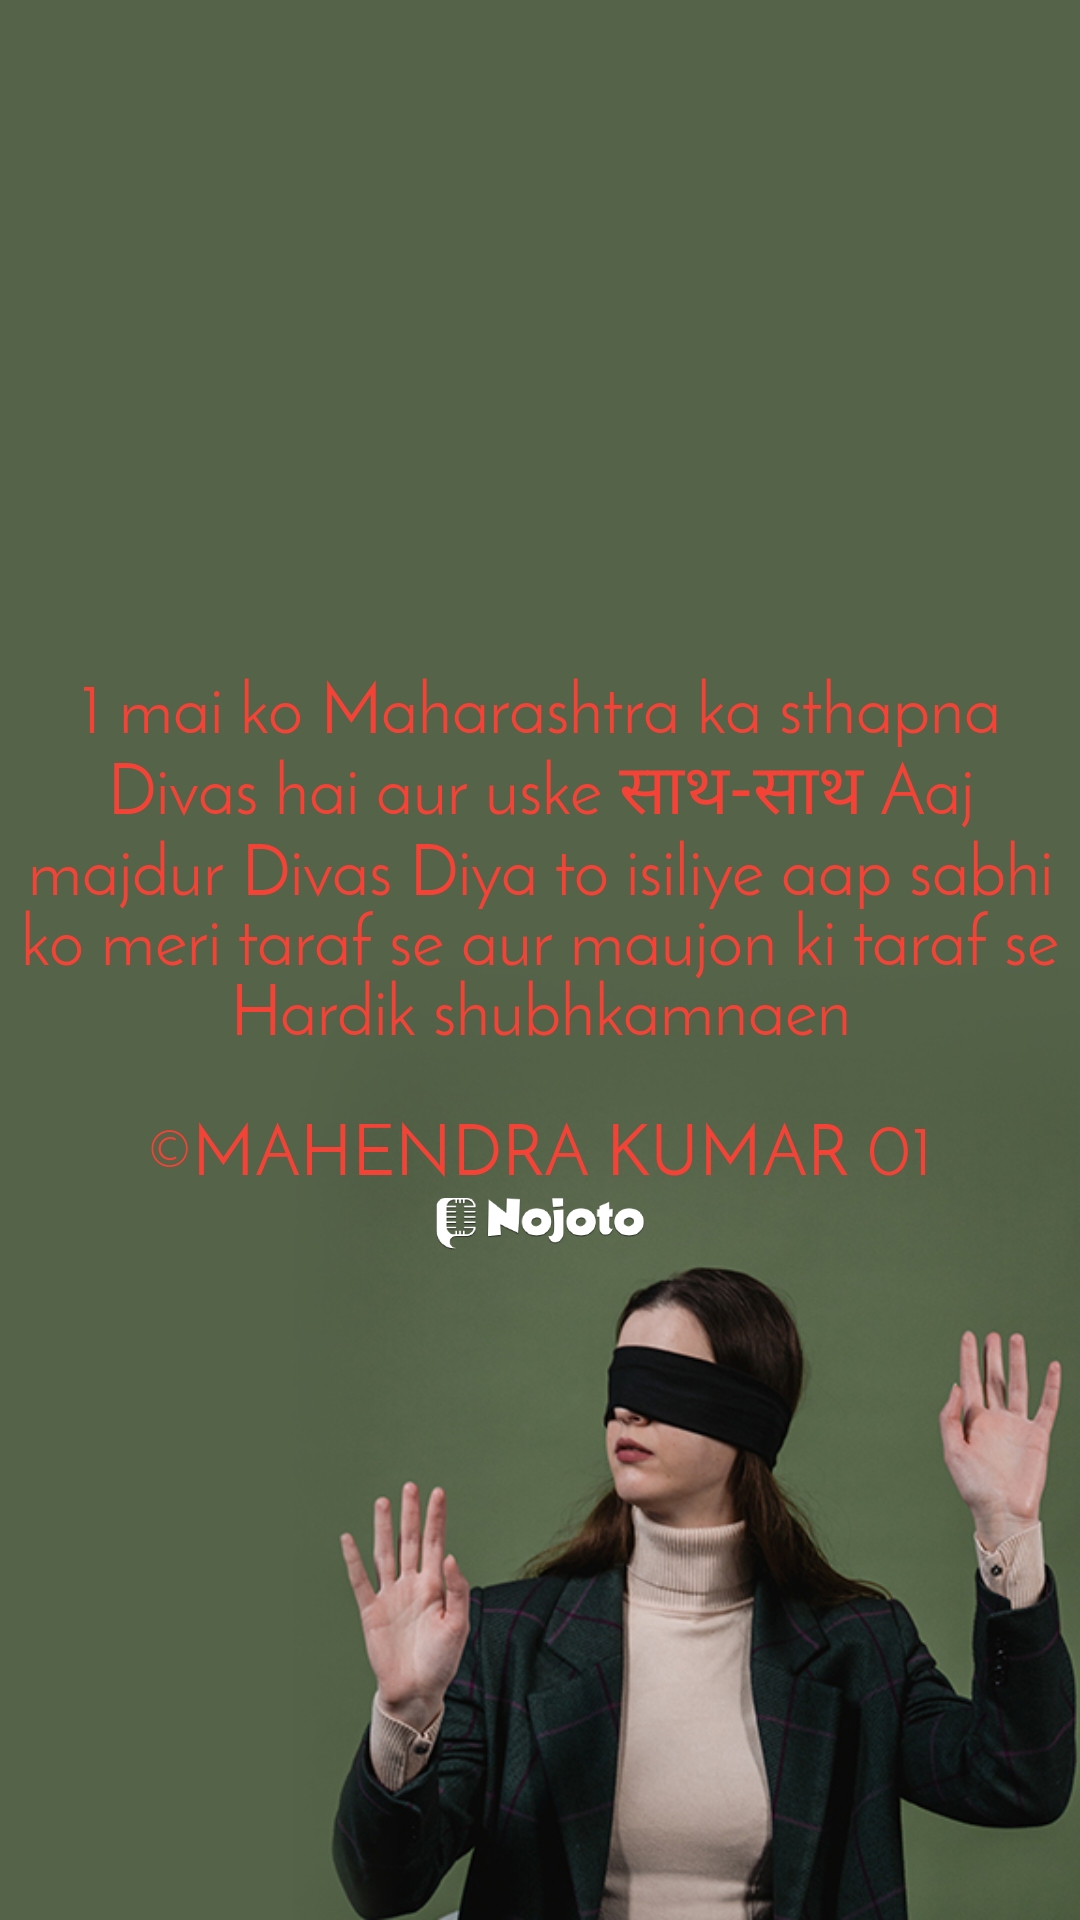 Aaj ek mai hai Maharashtra sthapna aur shram majdur Divas bhi hai isliye aap sabko meri taraf se Hardik shubhkamnaen

#blindtrust